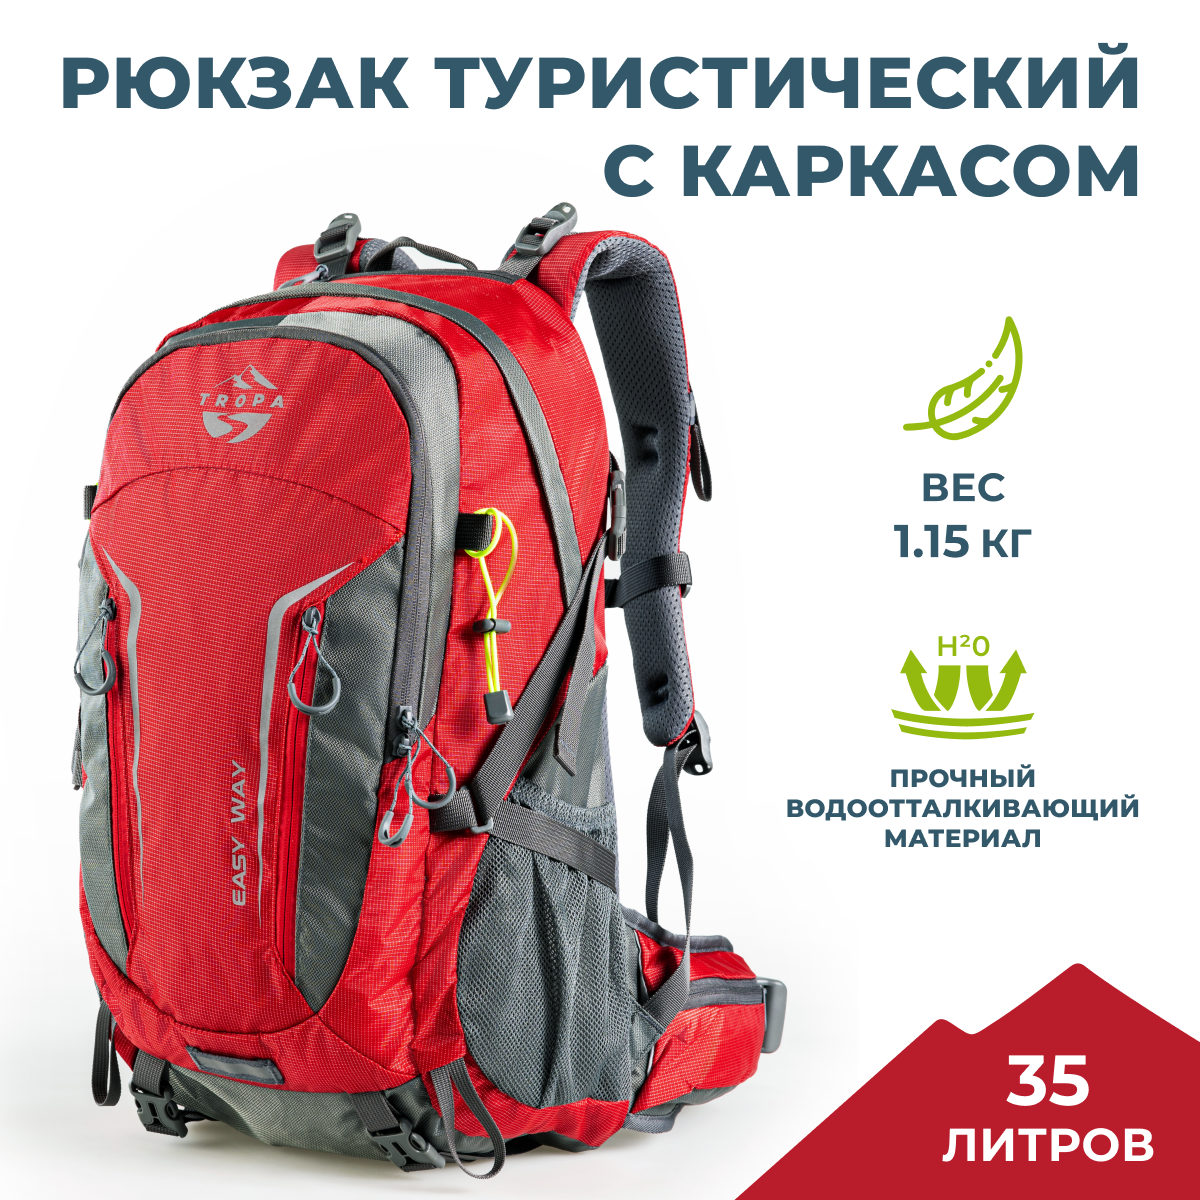 Рюкзак туристический мультиспортивный с каркасом TROPA Easy way 35, красный